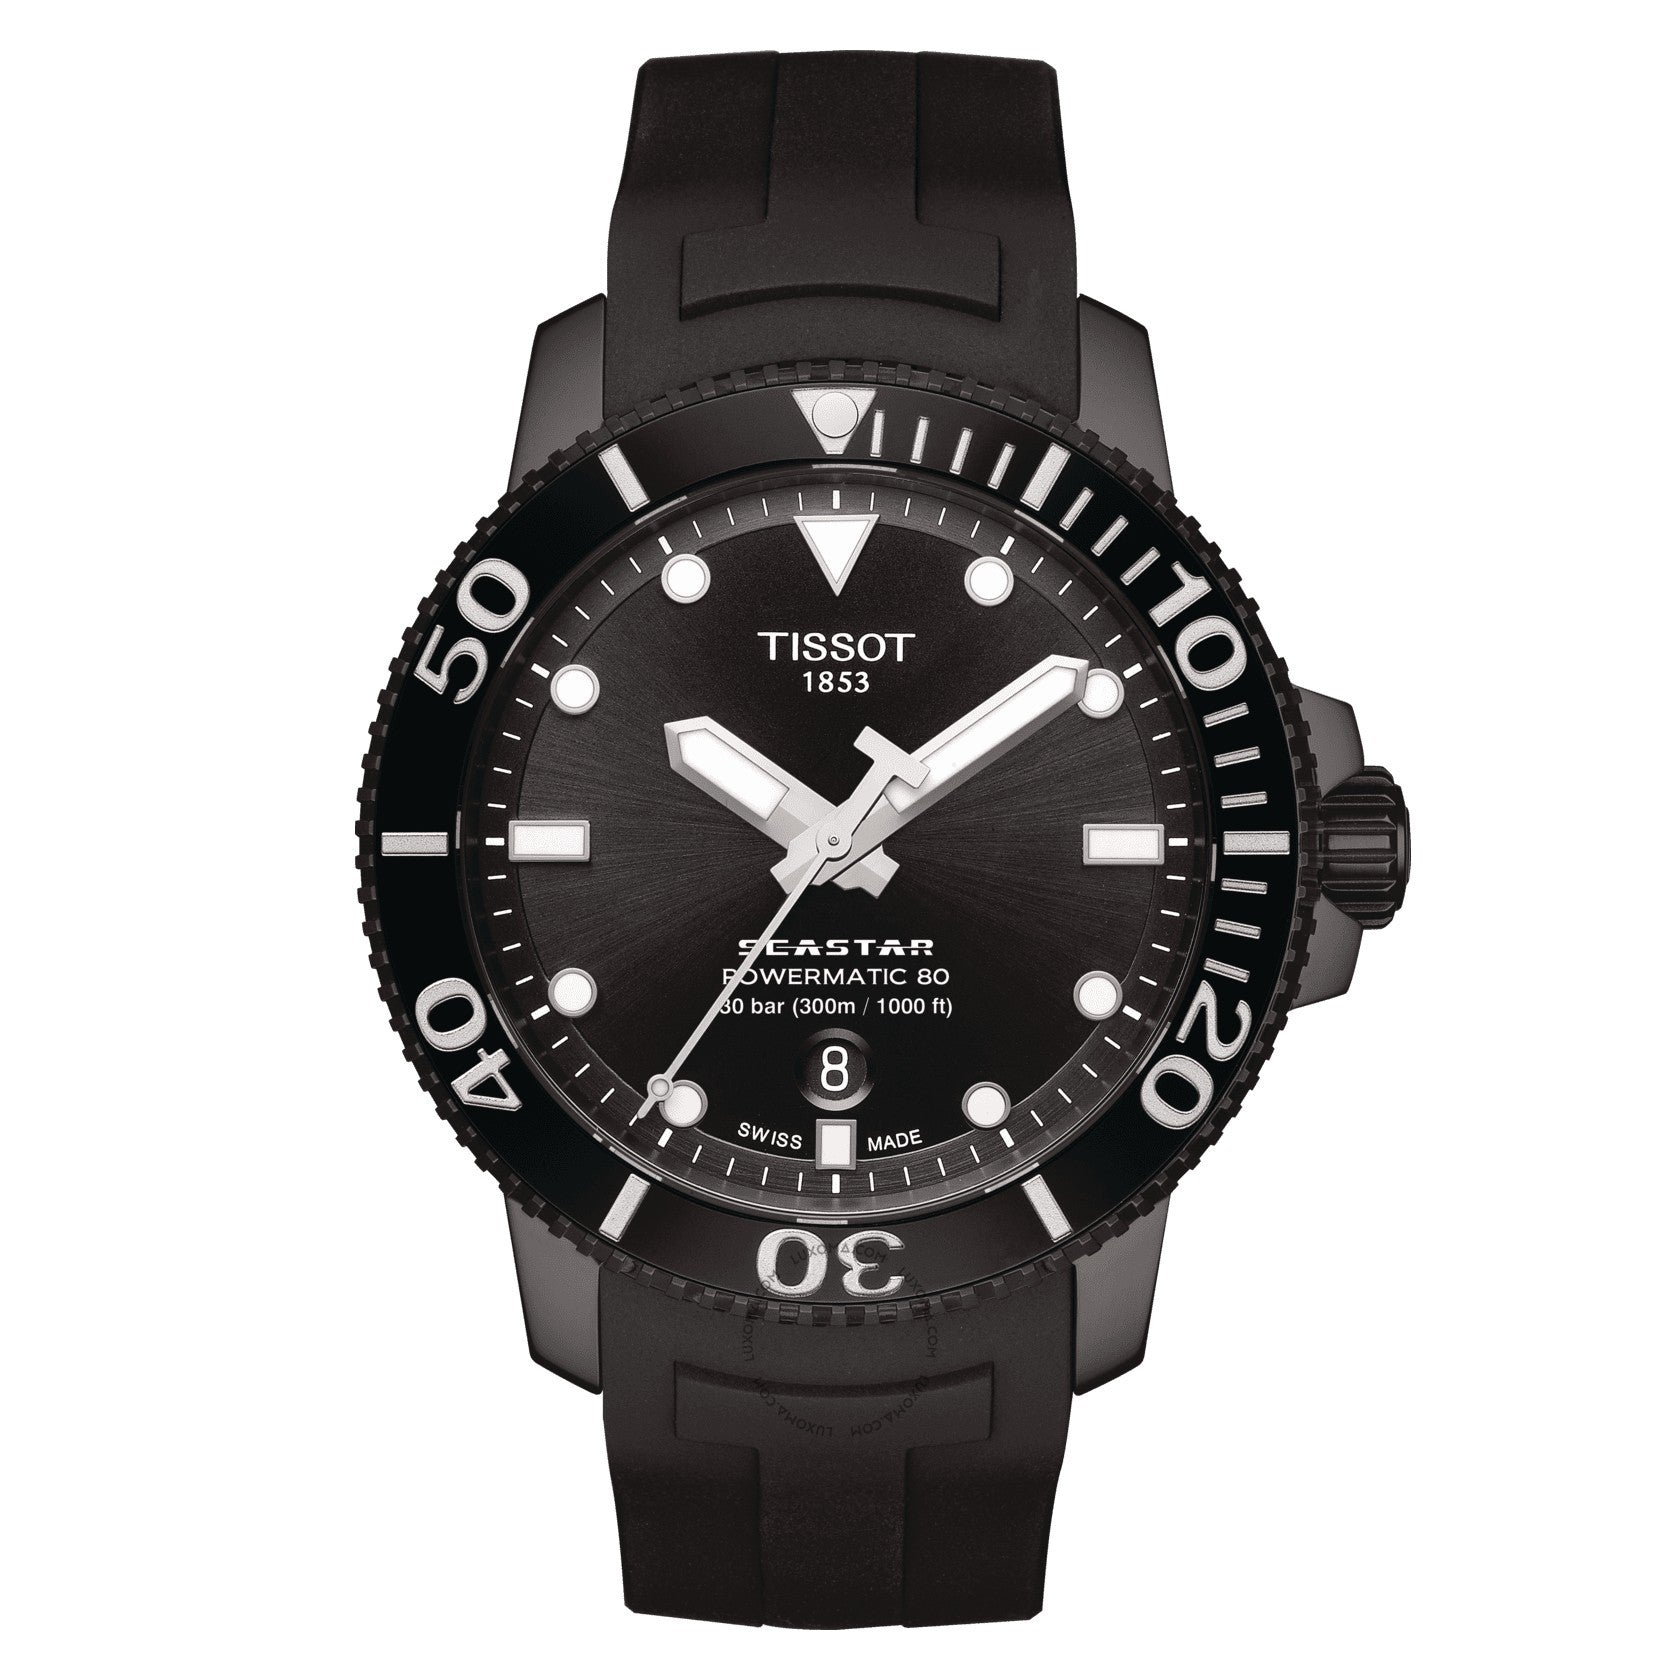 Tissot T-Sport Automatic Black Dial Men's Watch T120.407.37.051.00